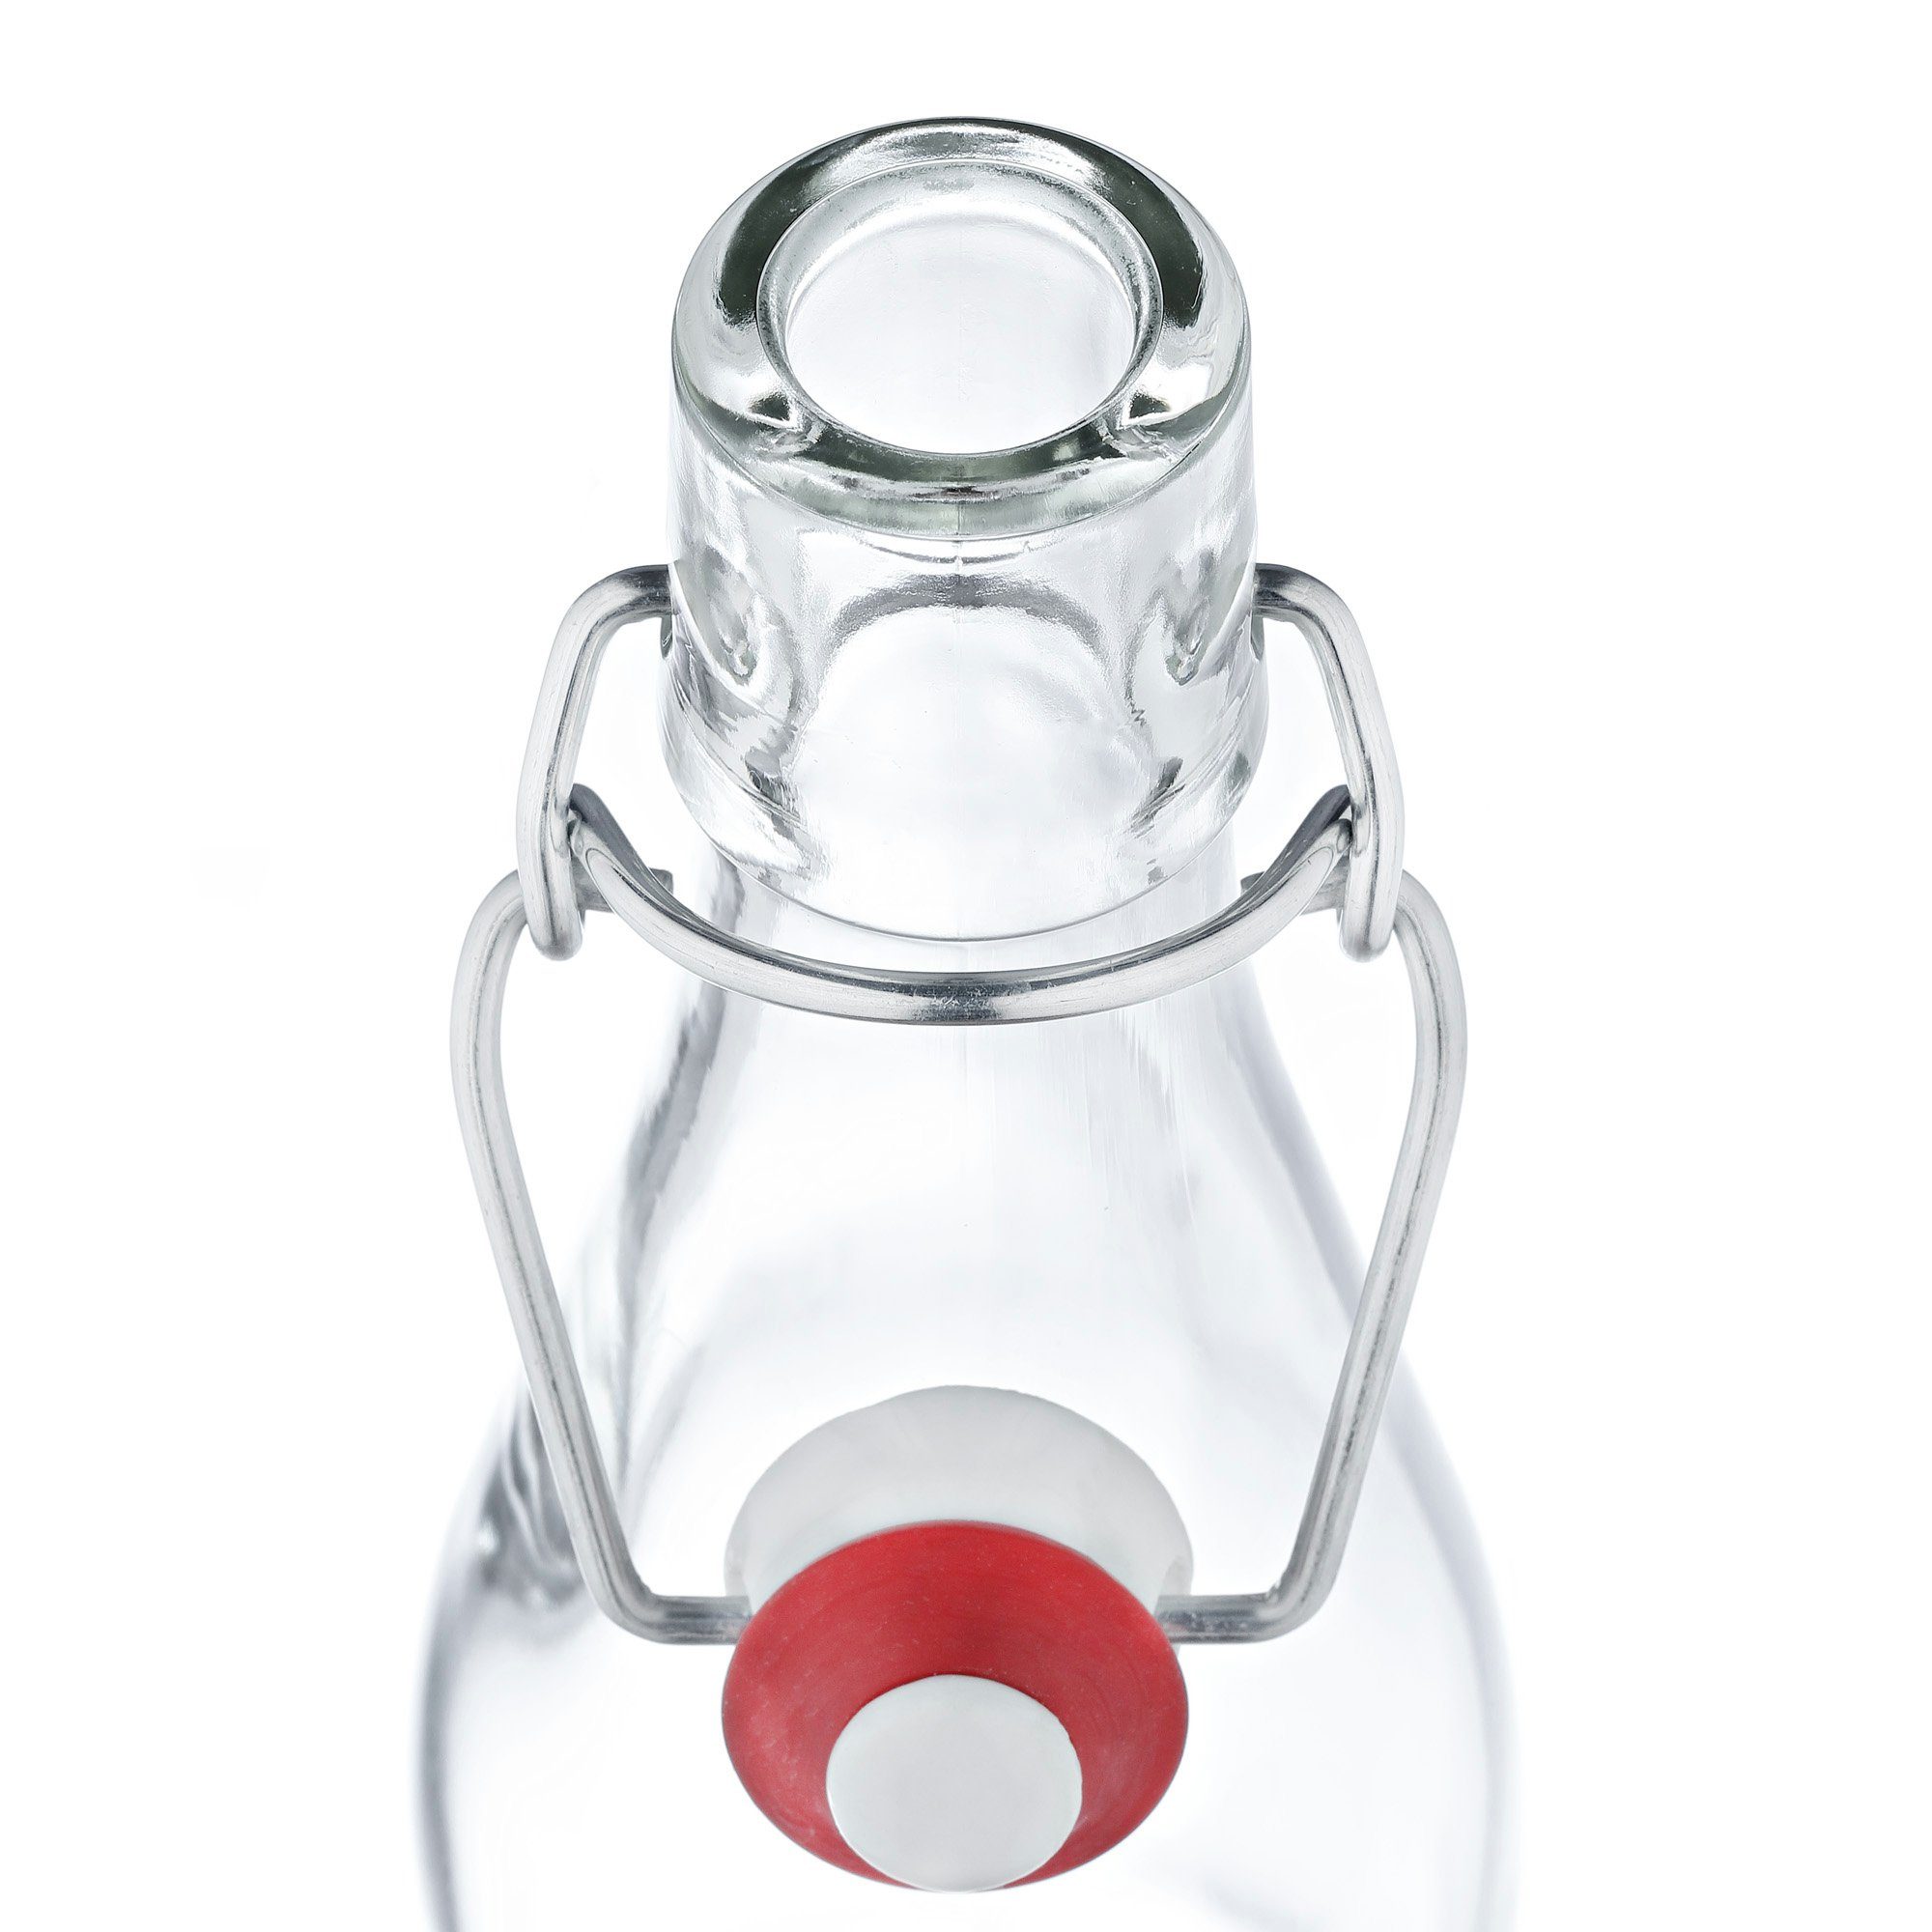 Bügelflasche Anton + Glasflasche, - ml Set Glas 6er 500 Bügelverschluss MamboCat Vorratsglas